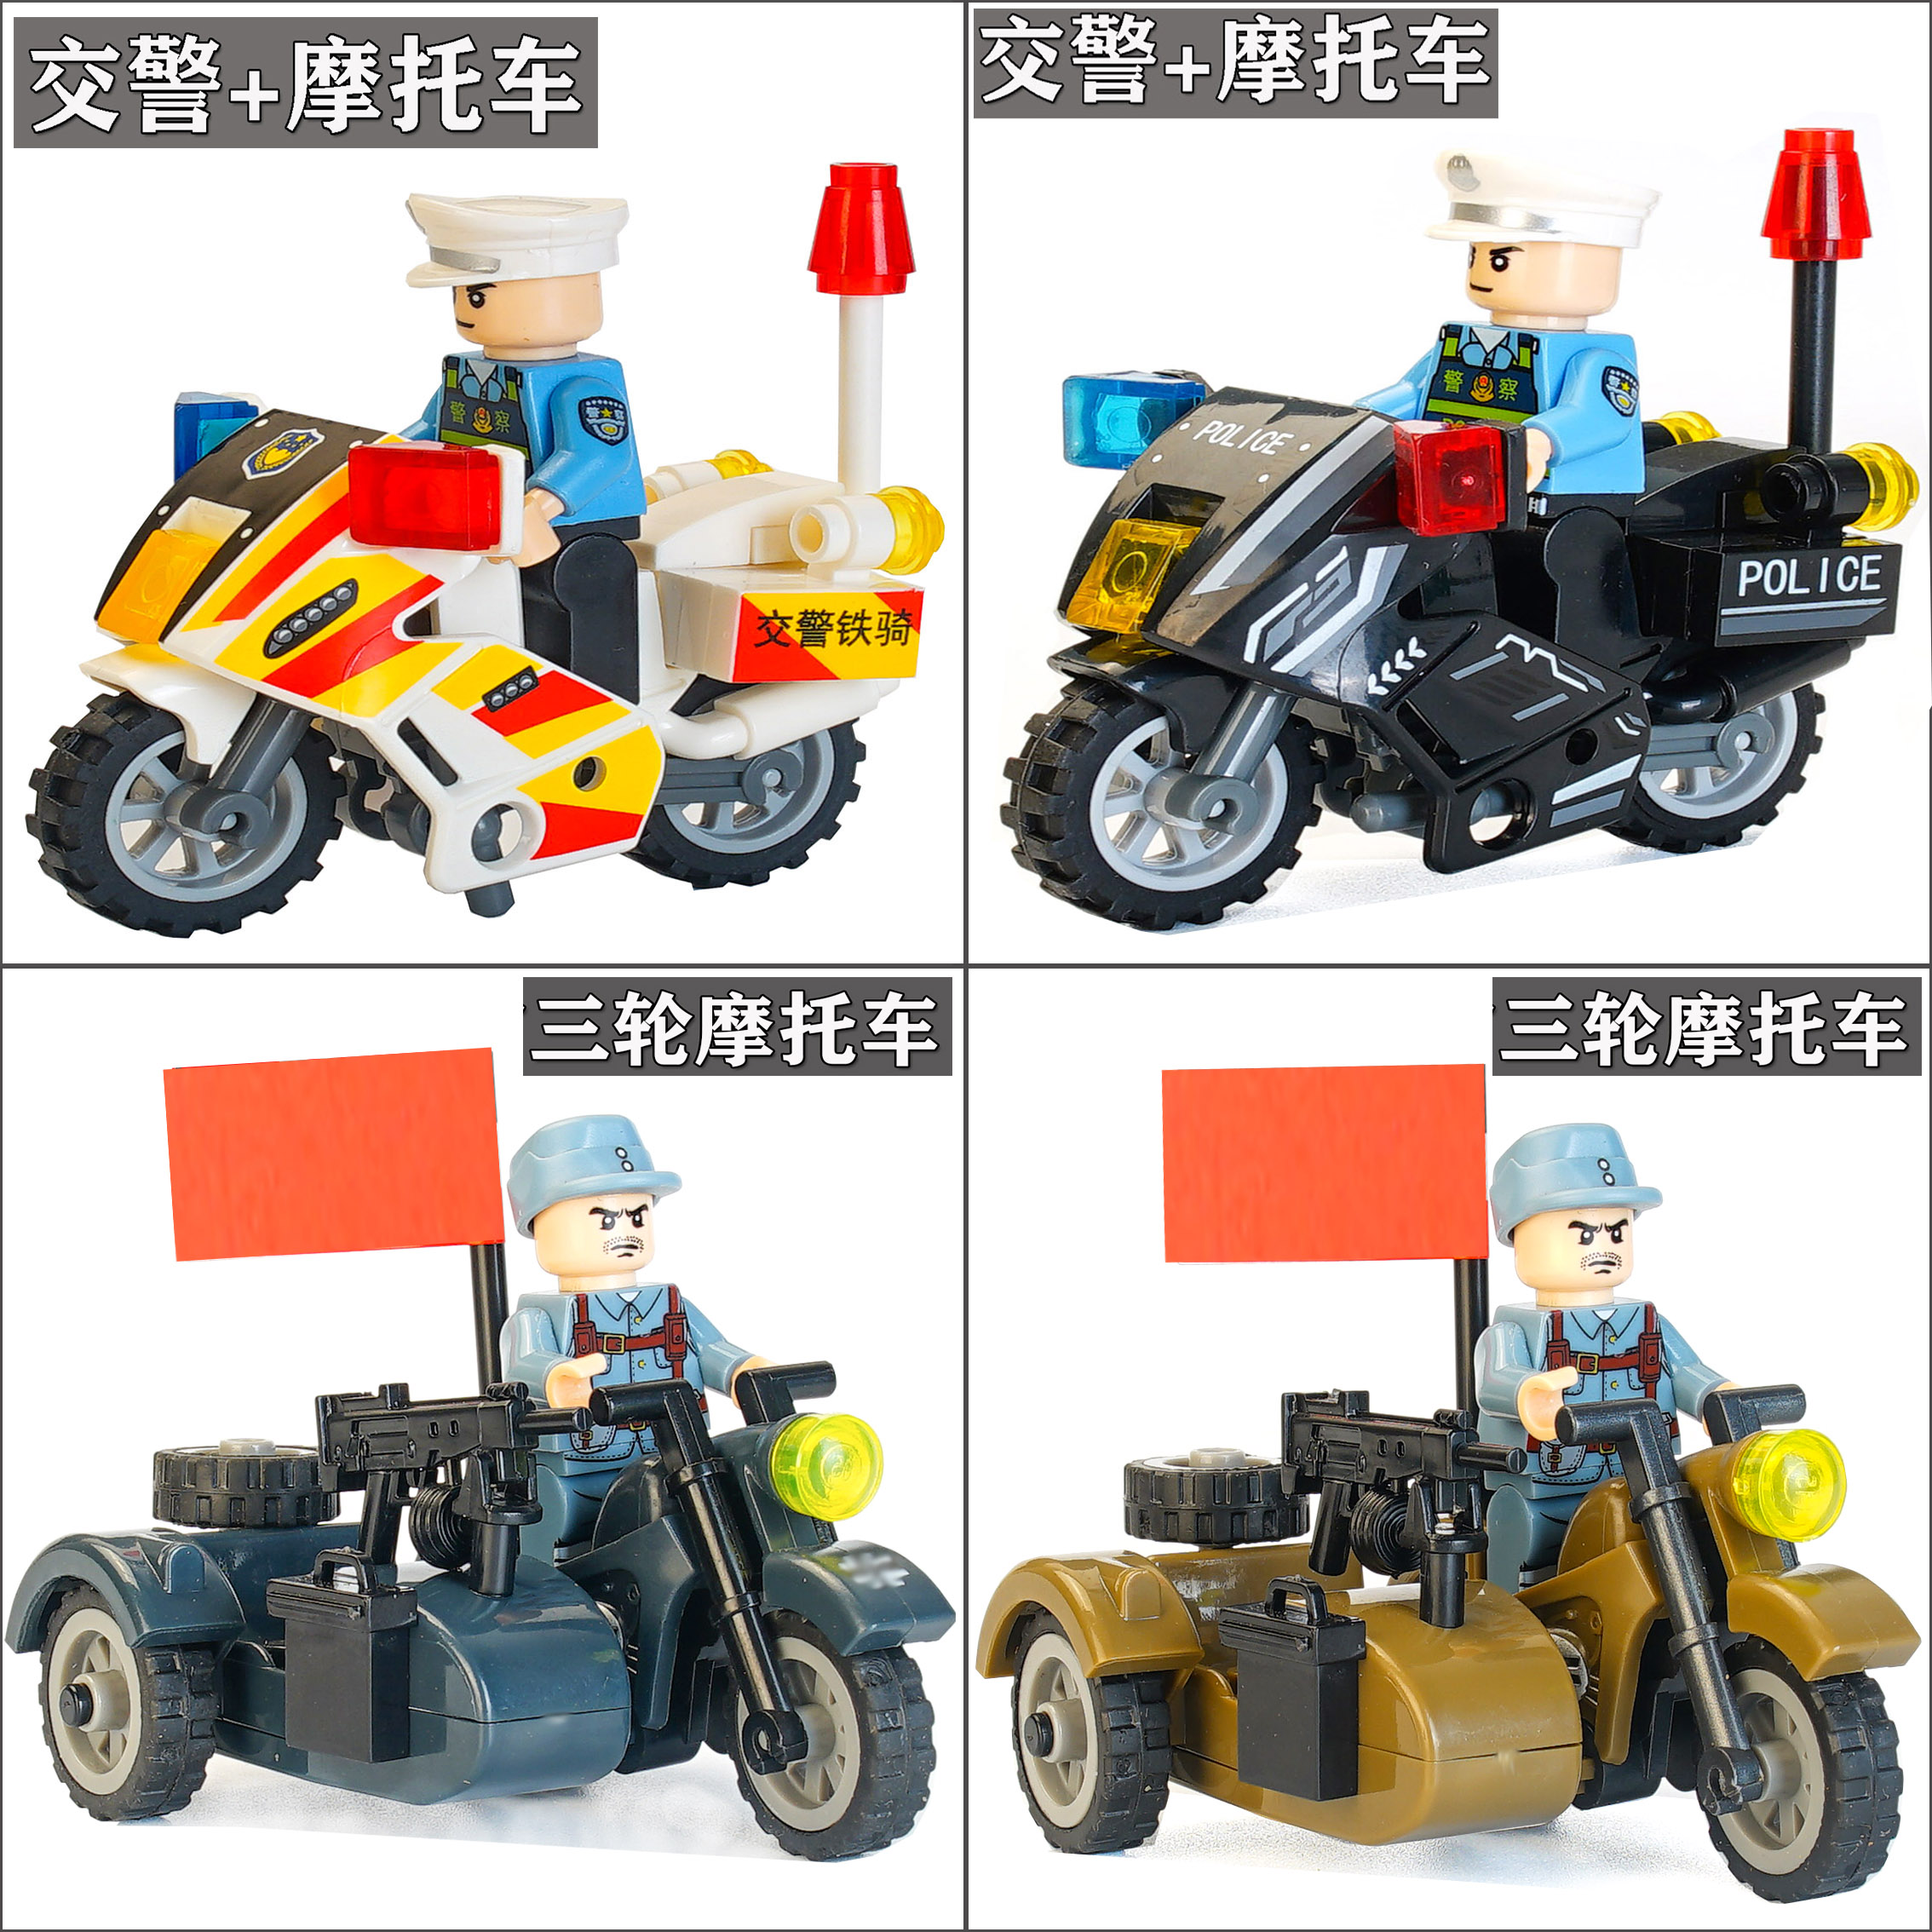 中国积木摩托车拼装军事人仔特种兵警察小人模型人偶益智男孩玩具